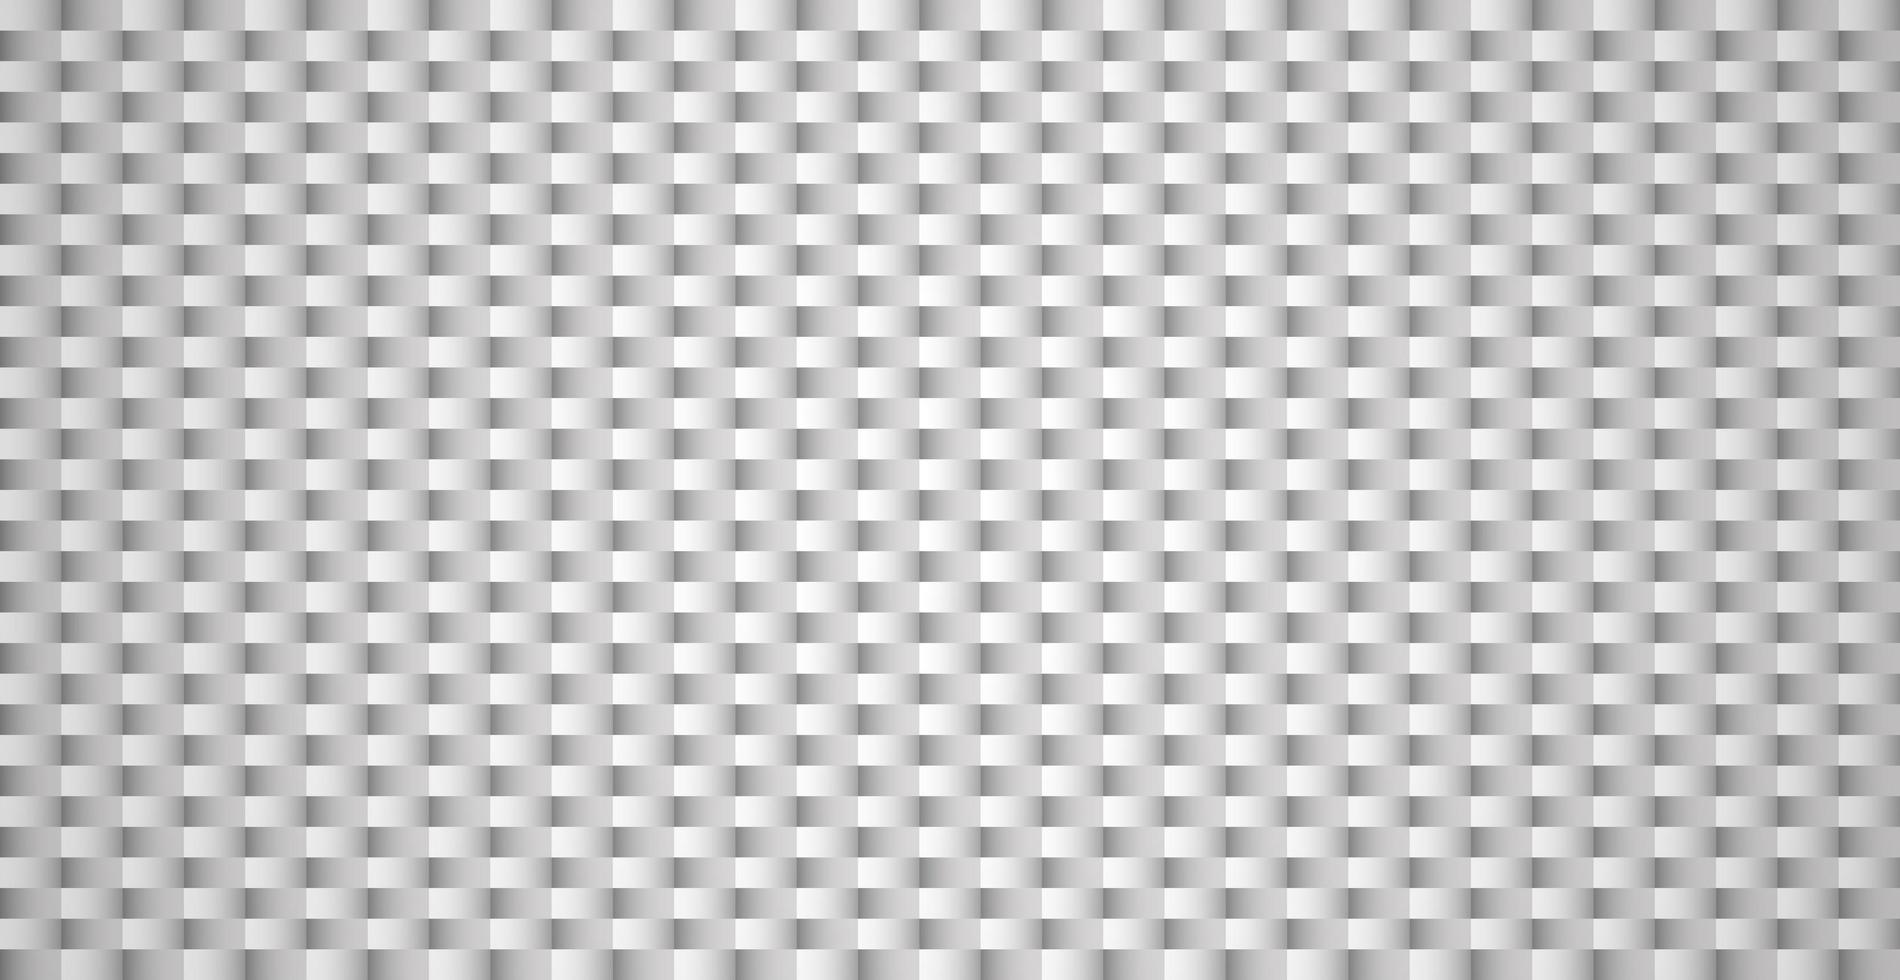 abstrakt bakgrund vit - grå rektanglar - vektor